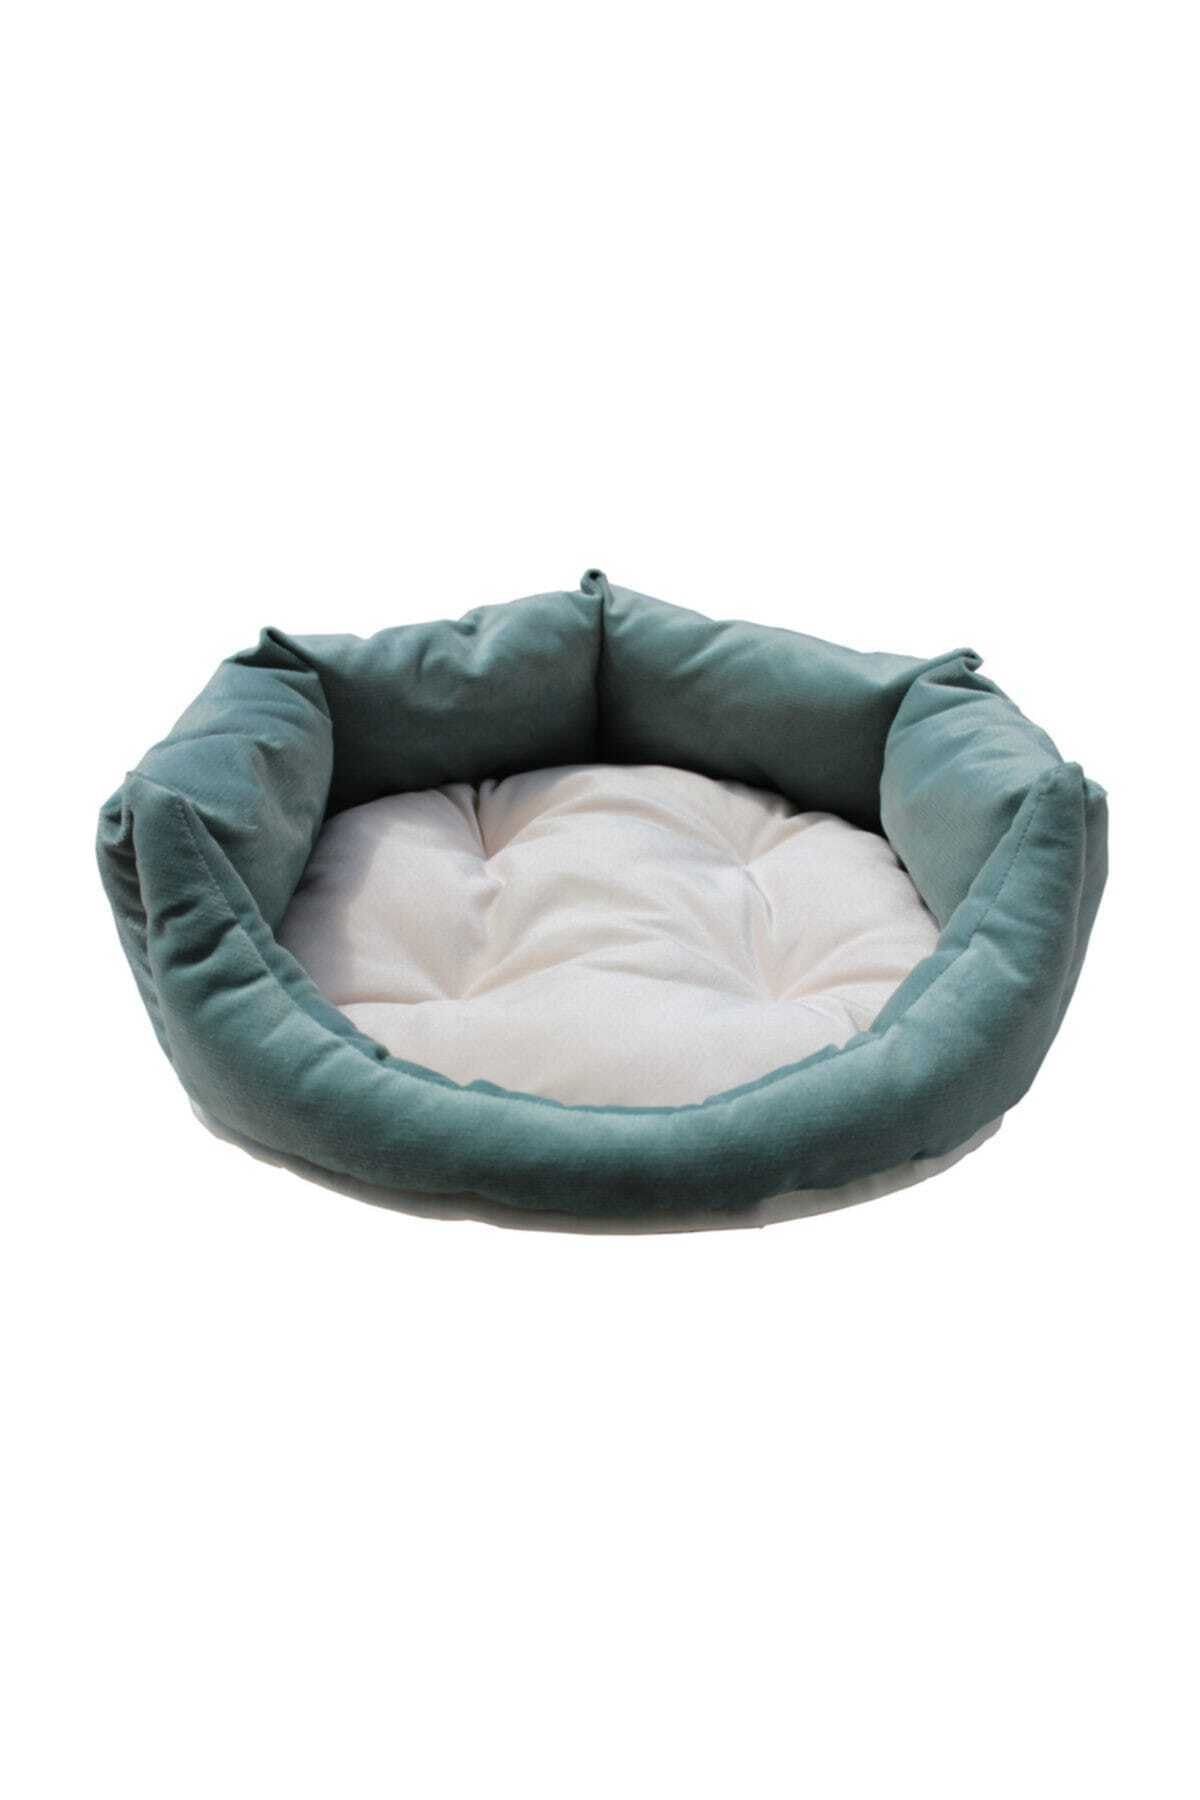 Tulyano Soft Kedi Köpek Yatağı Yıkanabilir Silinebilir Küçük Irk  50*50*18 cm